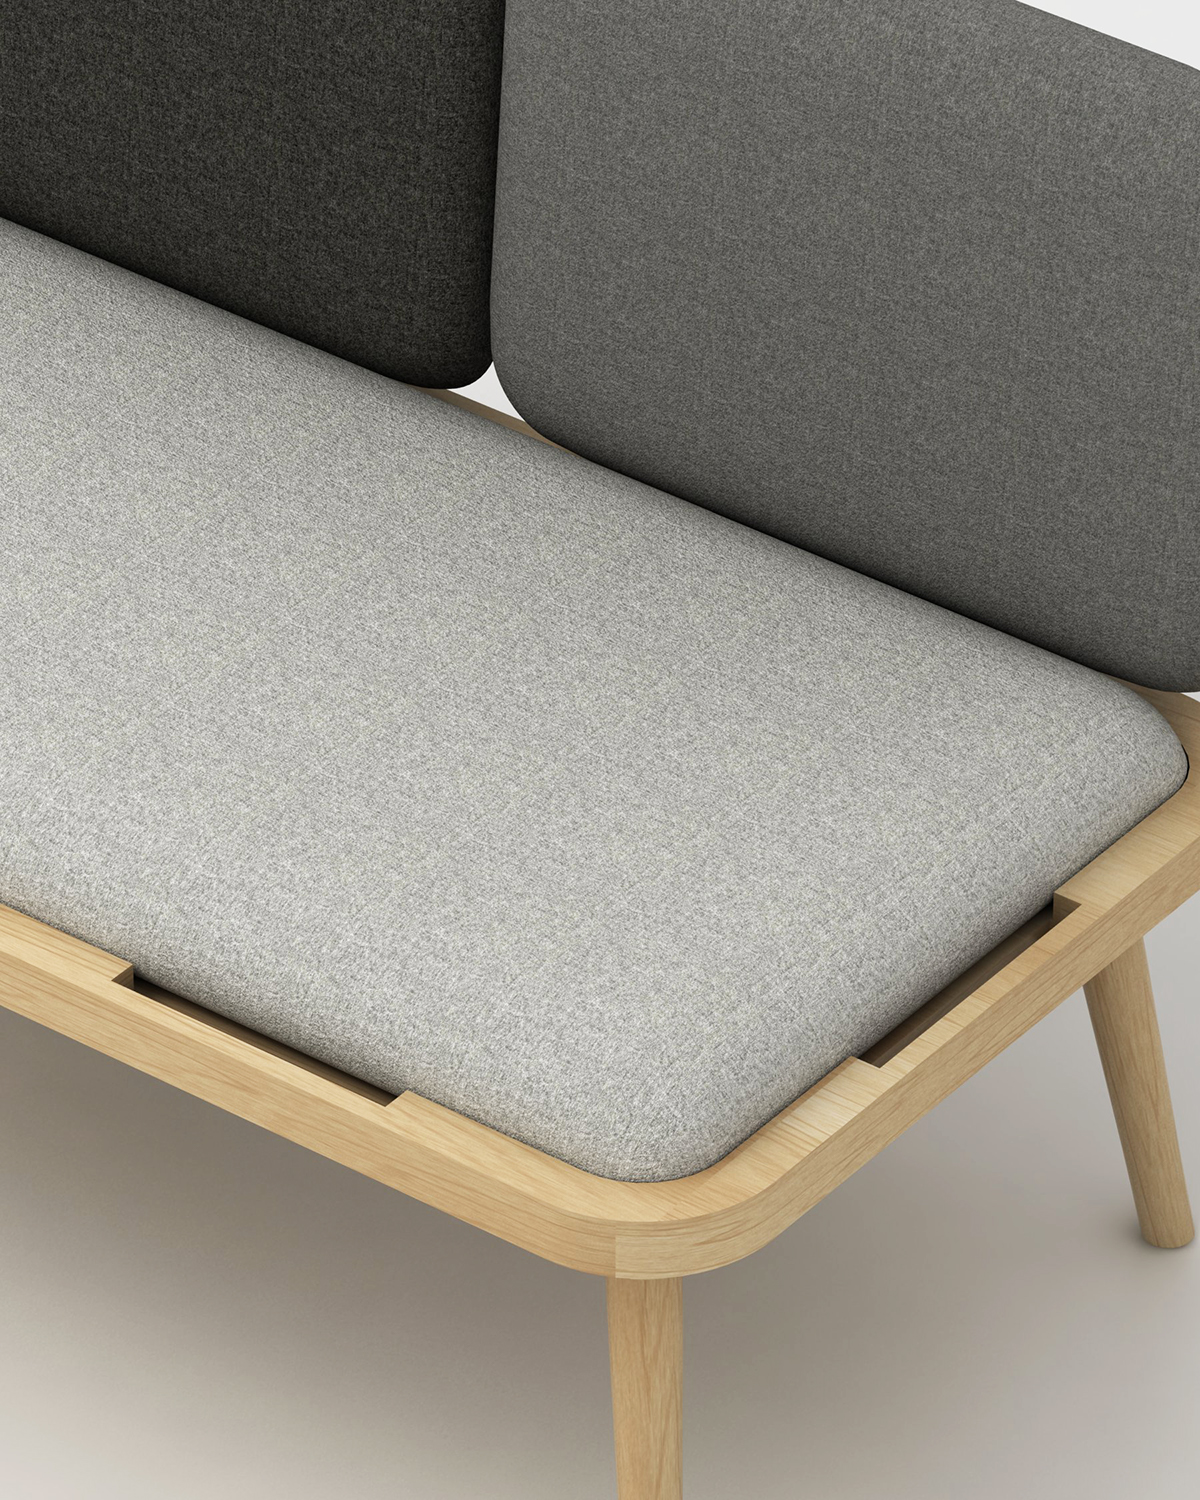 design banquette modulable Aurèle Chaudoye Simon Evrard papimami.studio Interior bench removable textile fabric mobilité assise